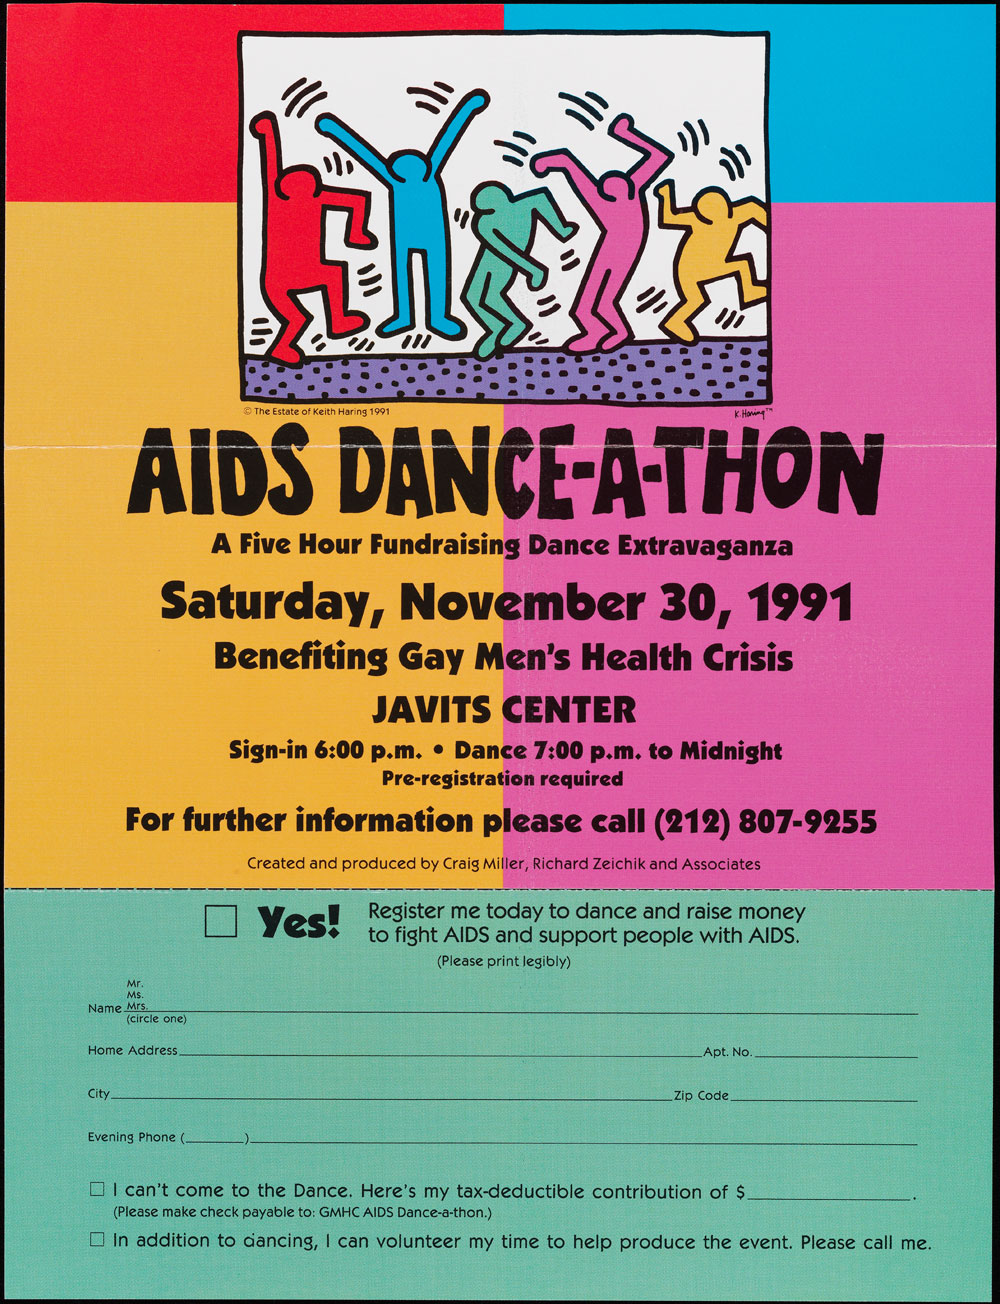 Folleto que anuncia un "SIDA Dance-A-thon" en noviembre de 1991. El póster es de colores brillantes e incluye un formulario de registro